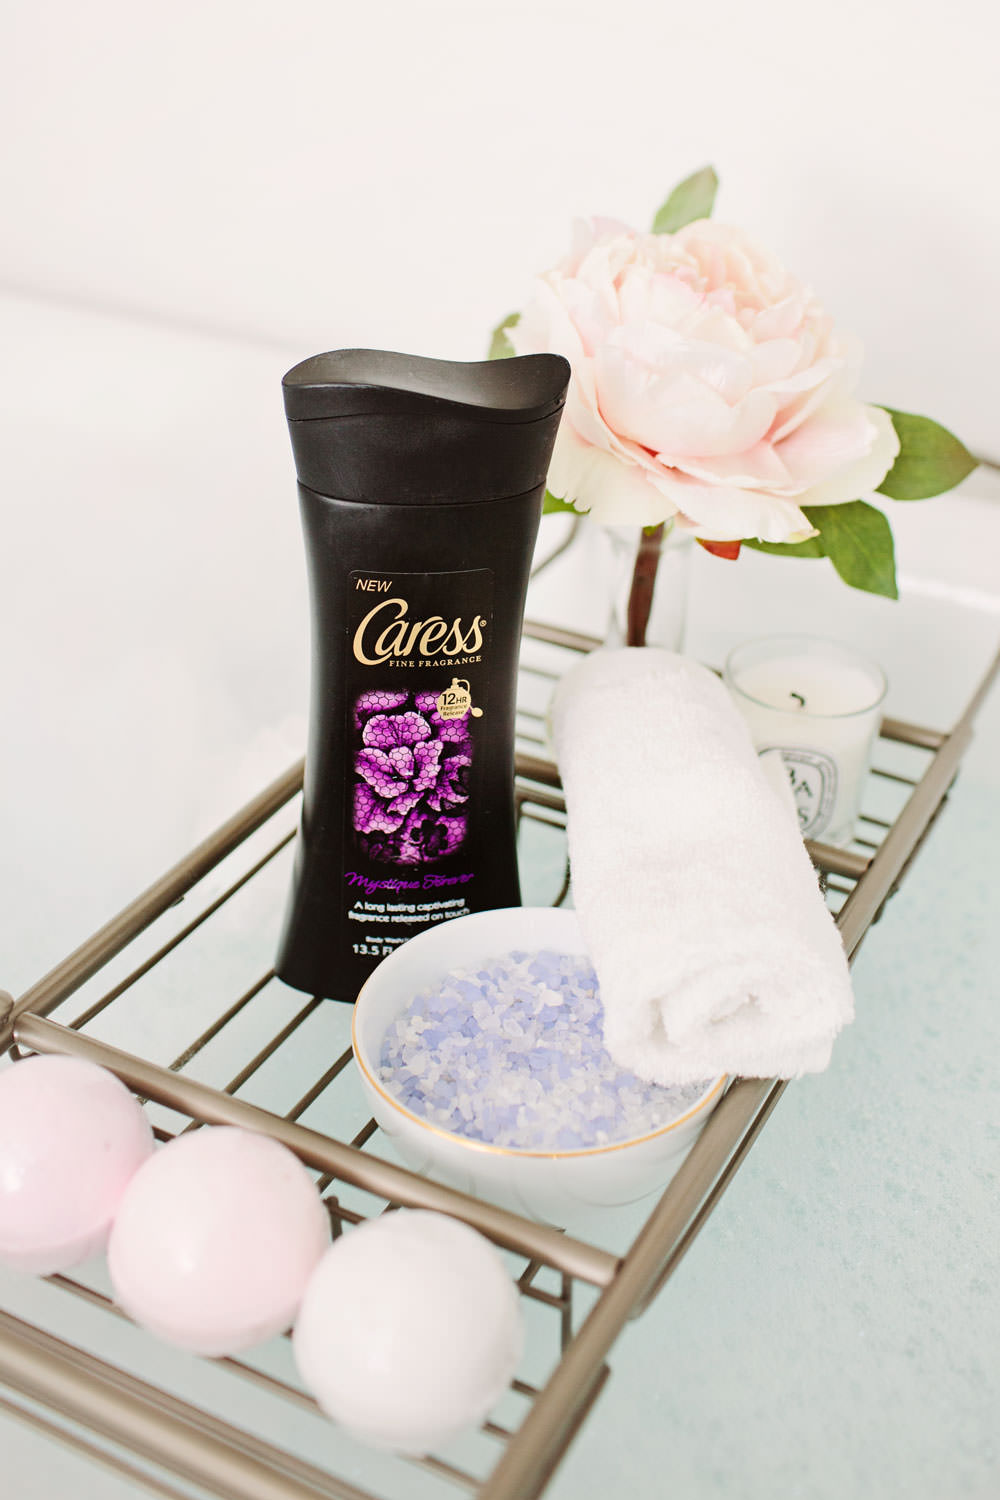 Caress fine fragrances lavender scented body wash